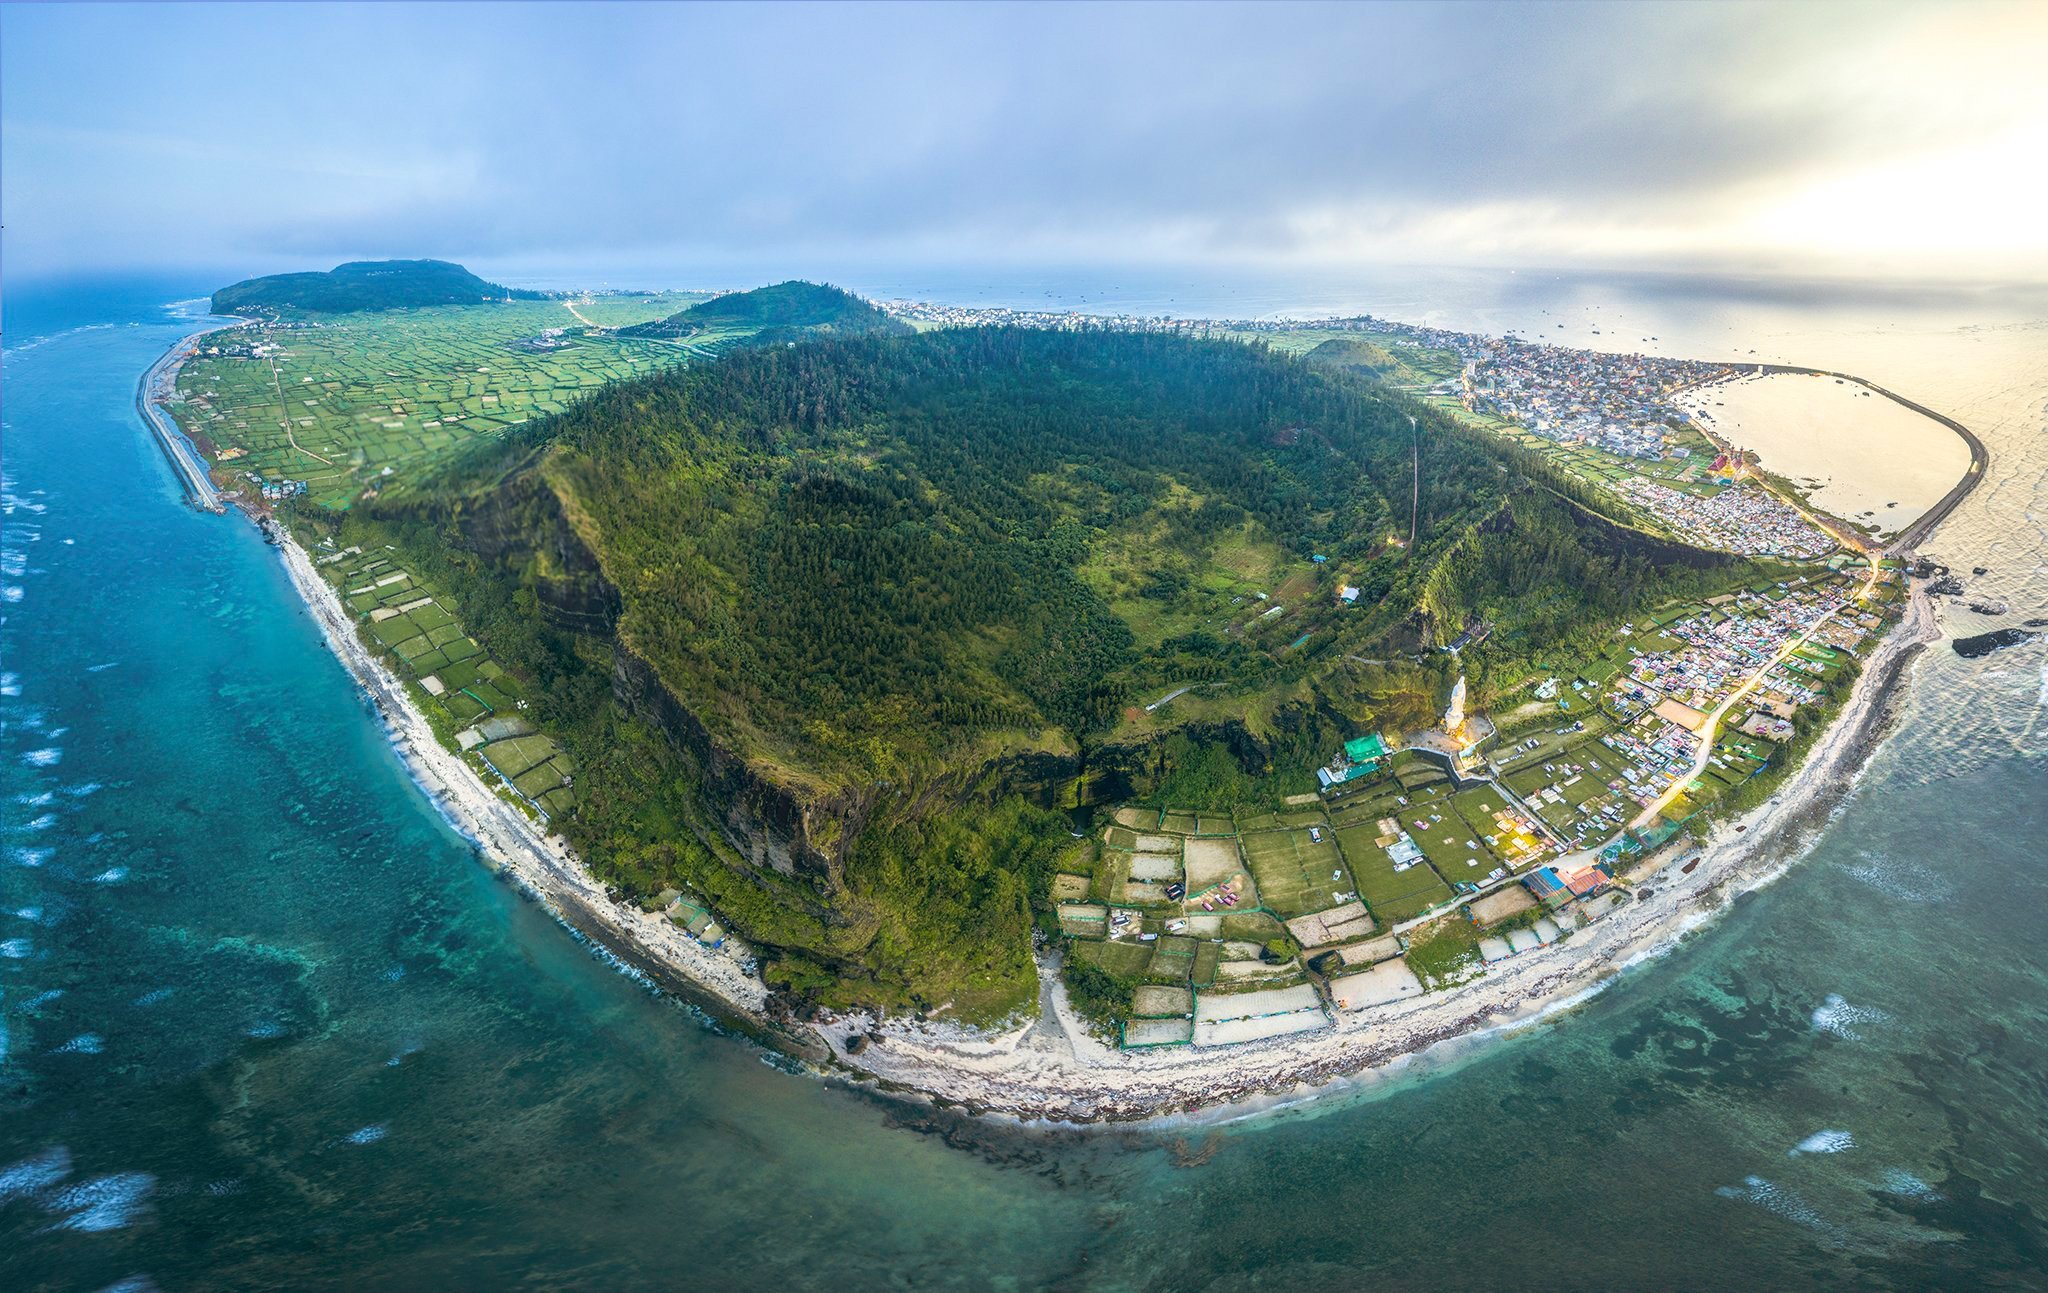 Với hơn 2.000 người mỗi km2, Lý Sơn là huyện đảo có mật độ dân số cao nhất trong 12 huyện đảo